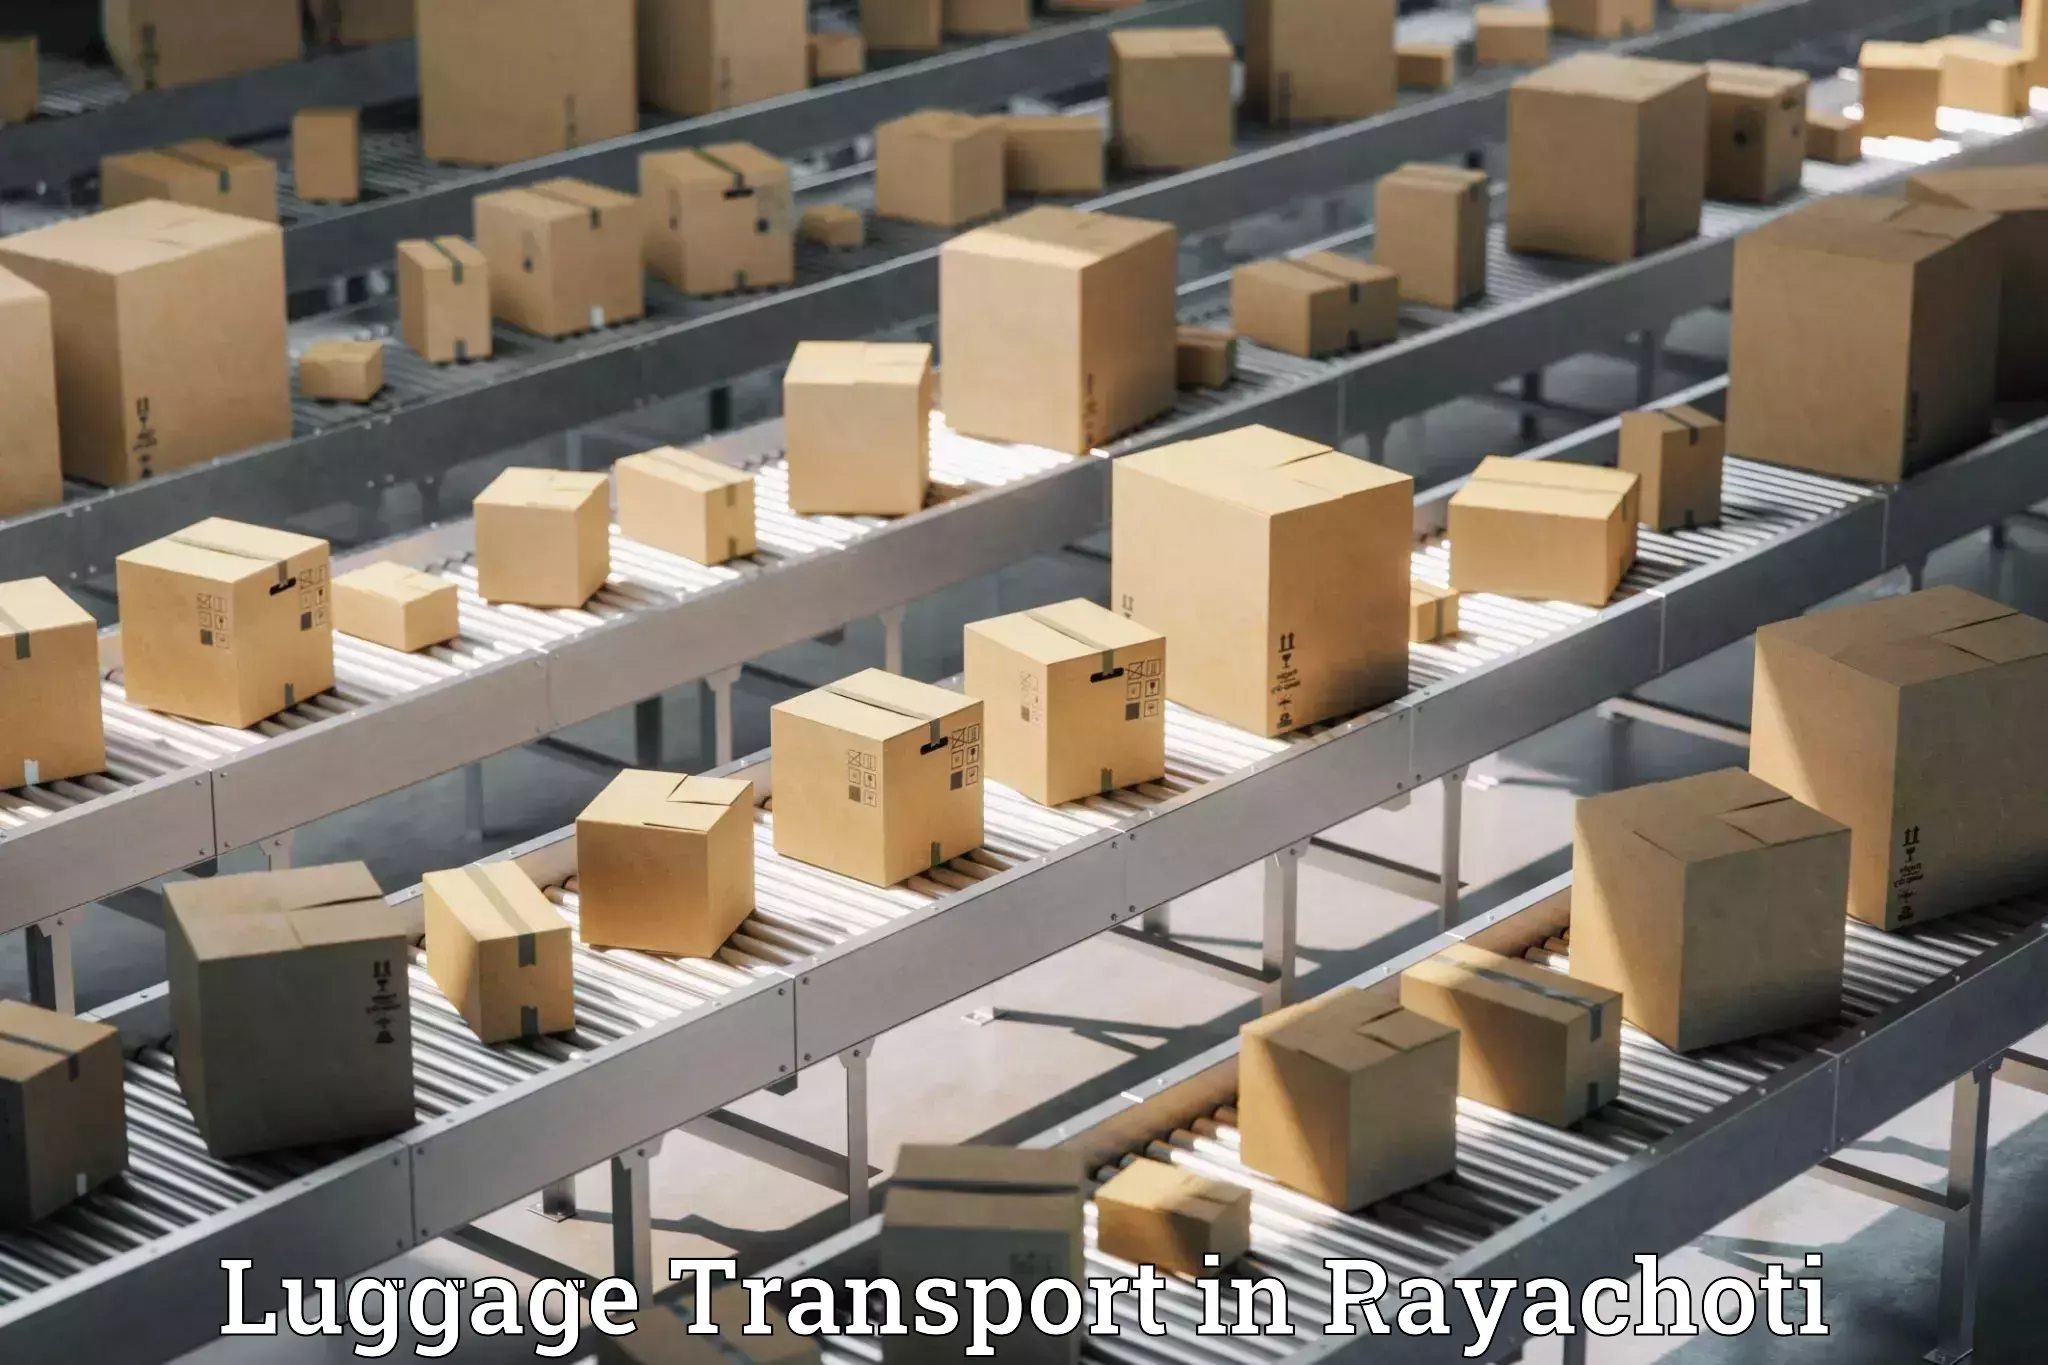 Regional luggage transport in Rayachoti